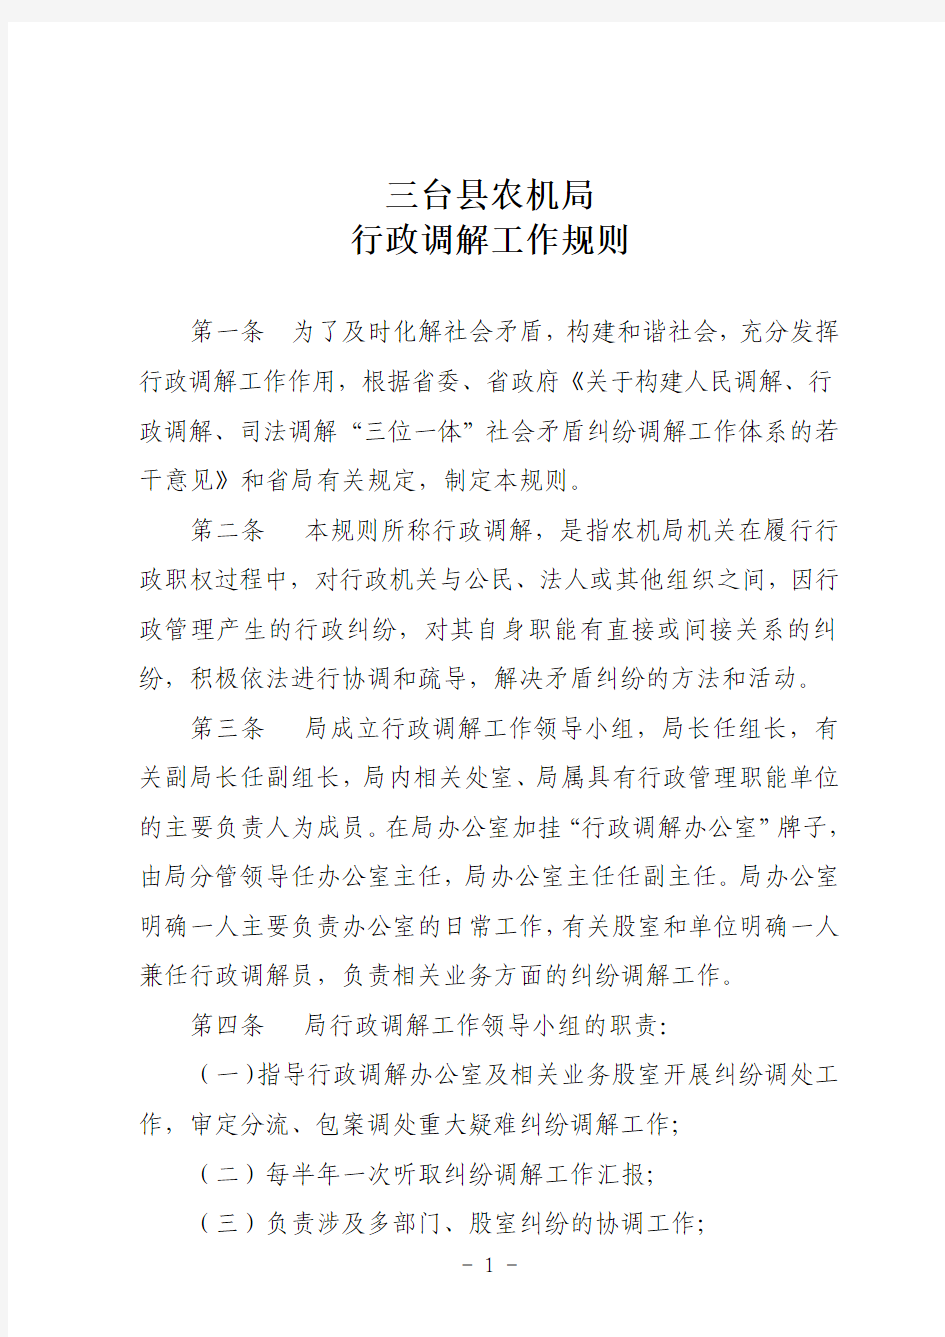 三台县农业机械管理局关于印发《行政调解工作规则》的通知